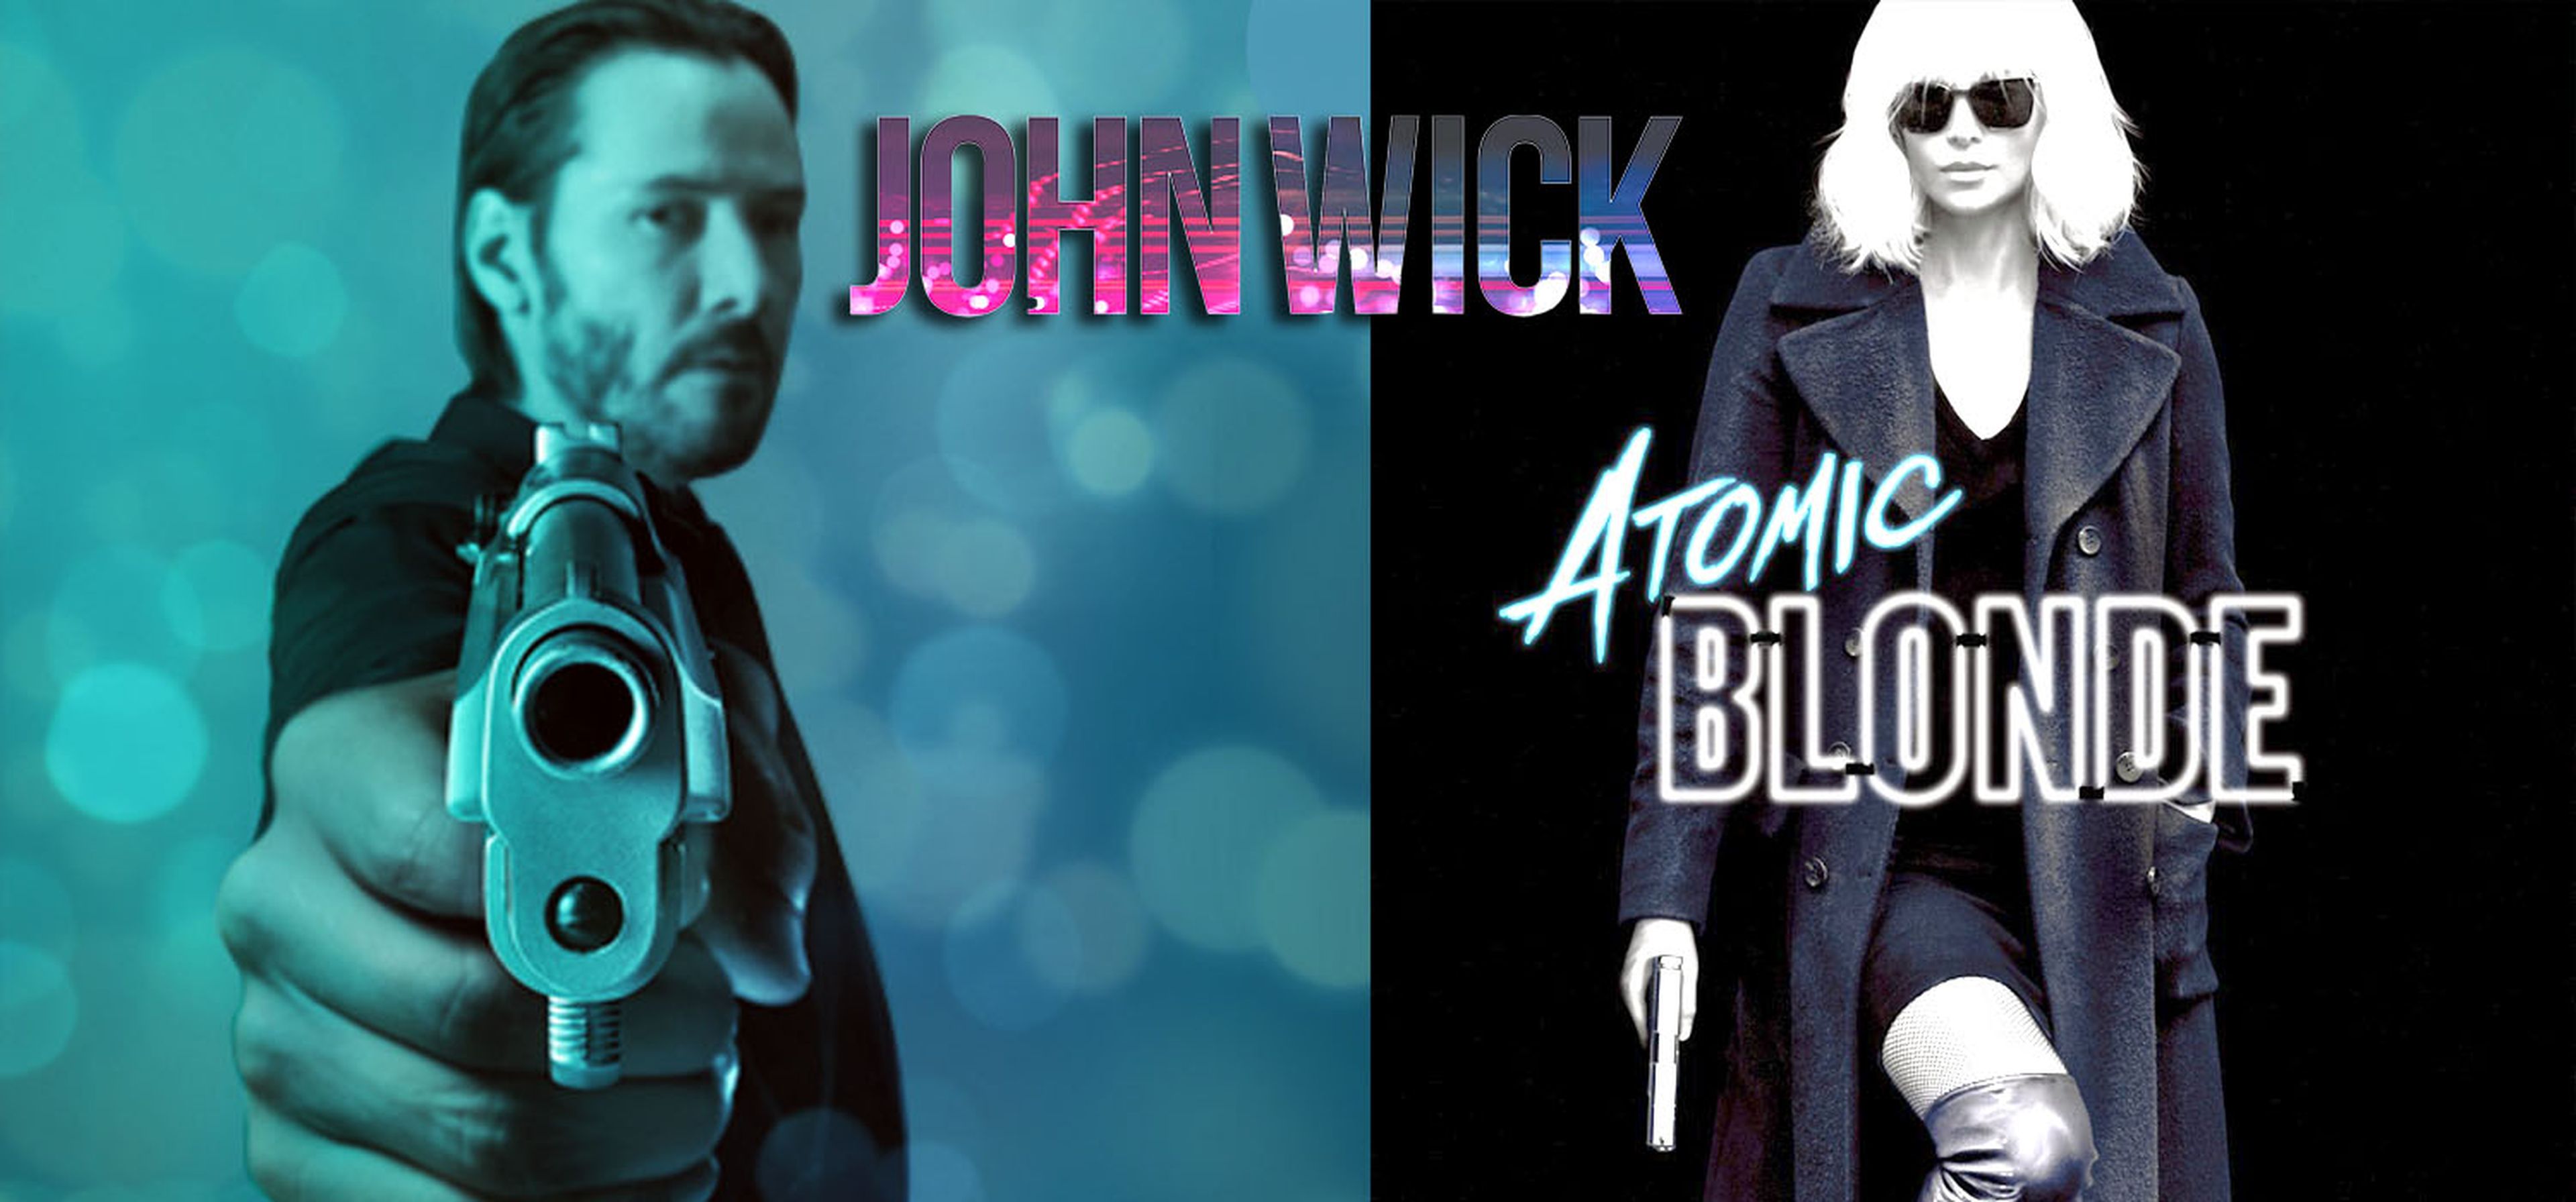 john Wick Atomic blonde principal